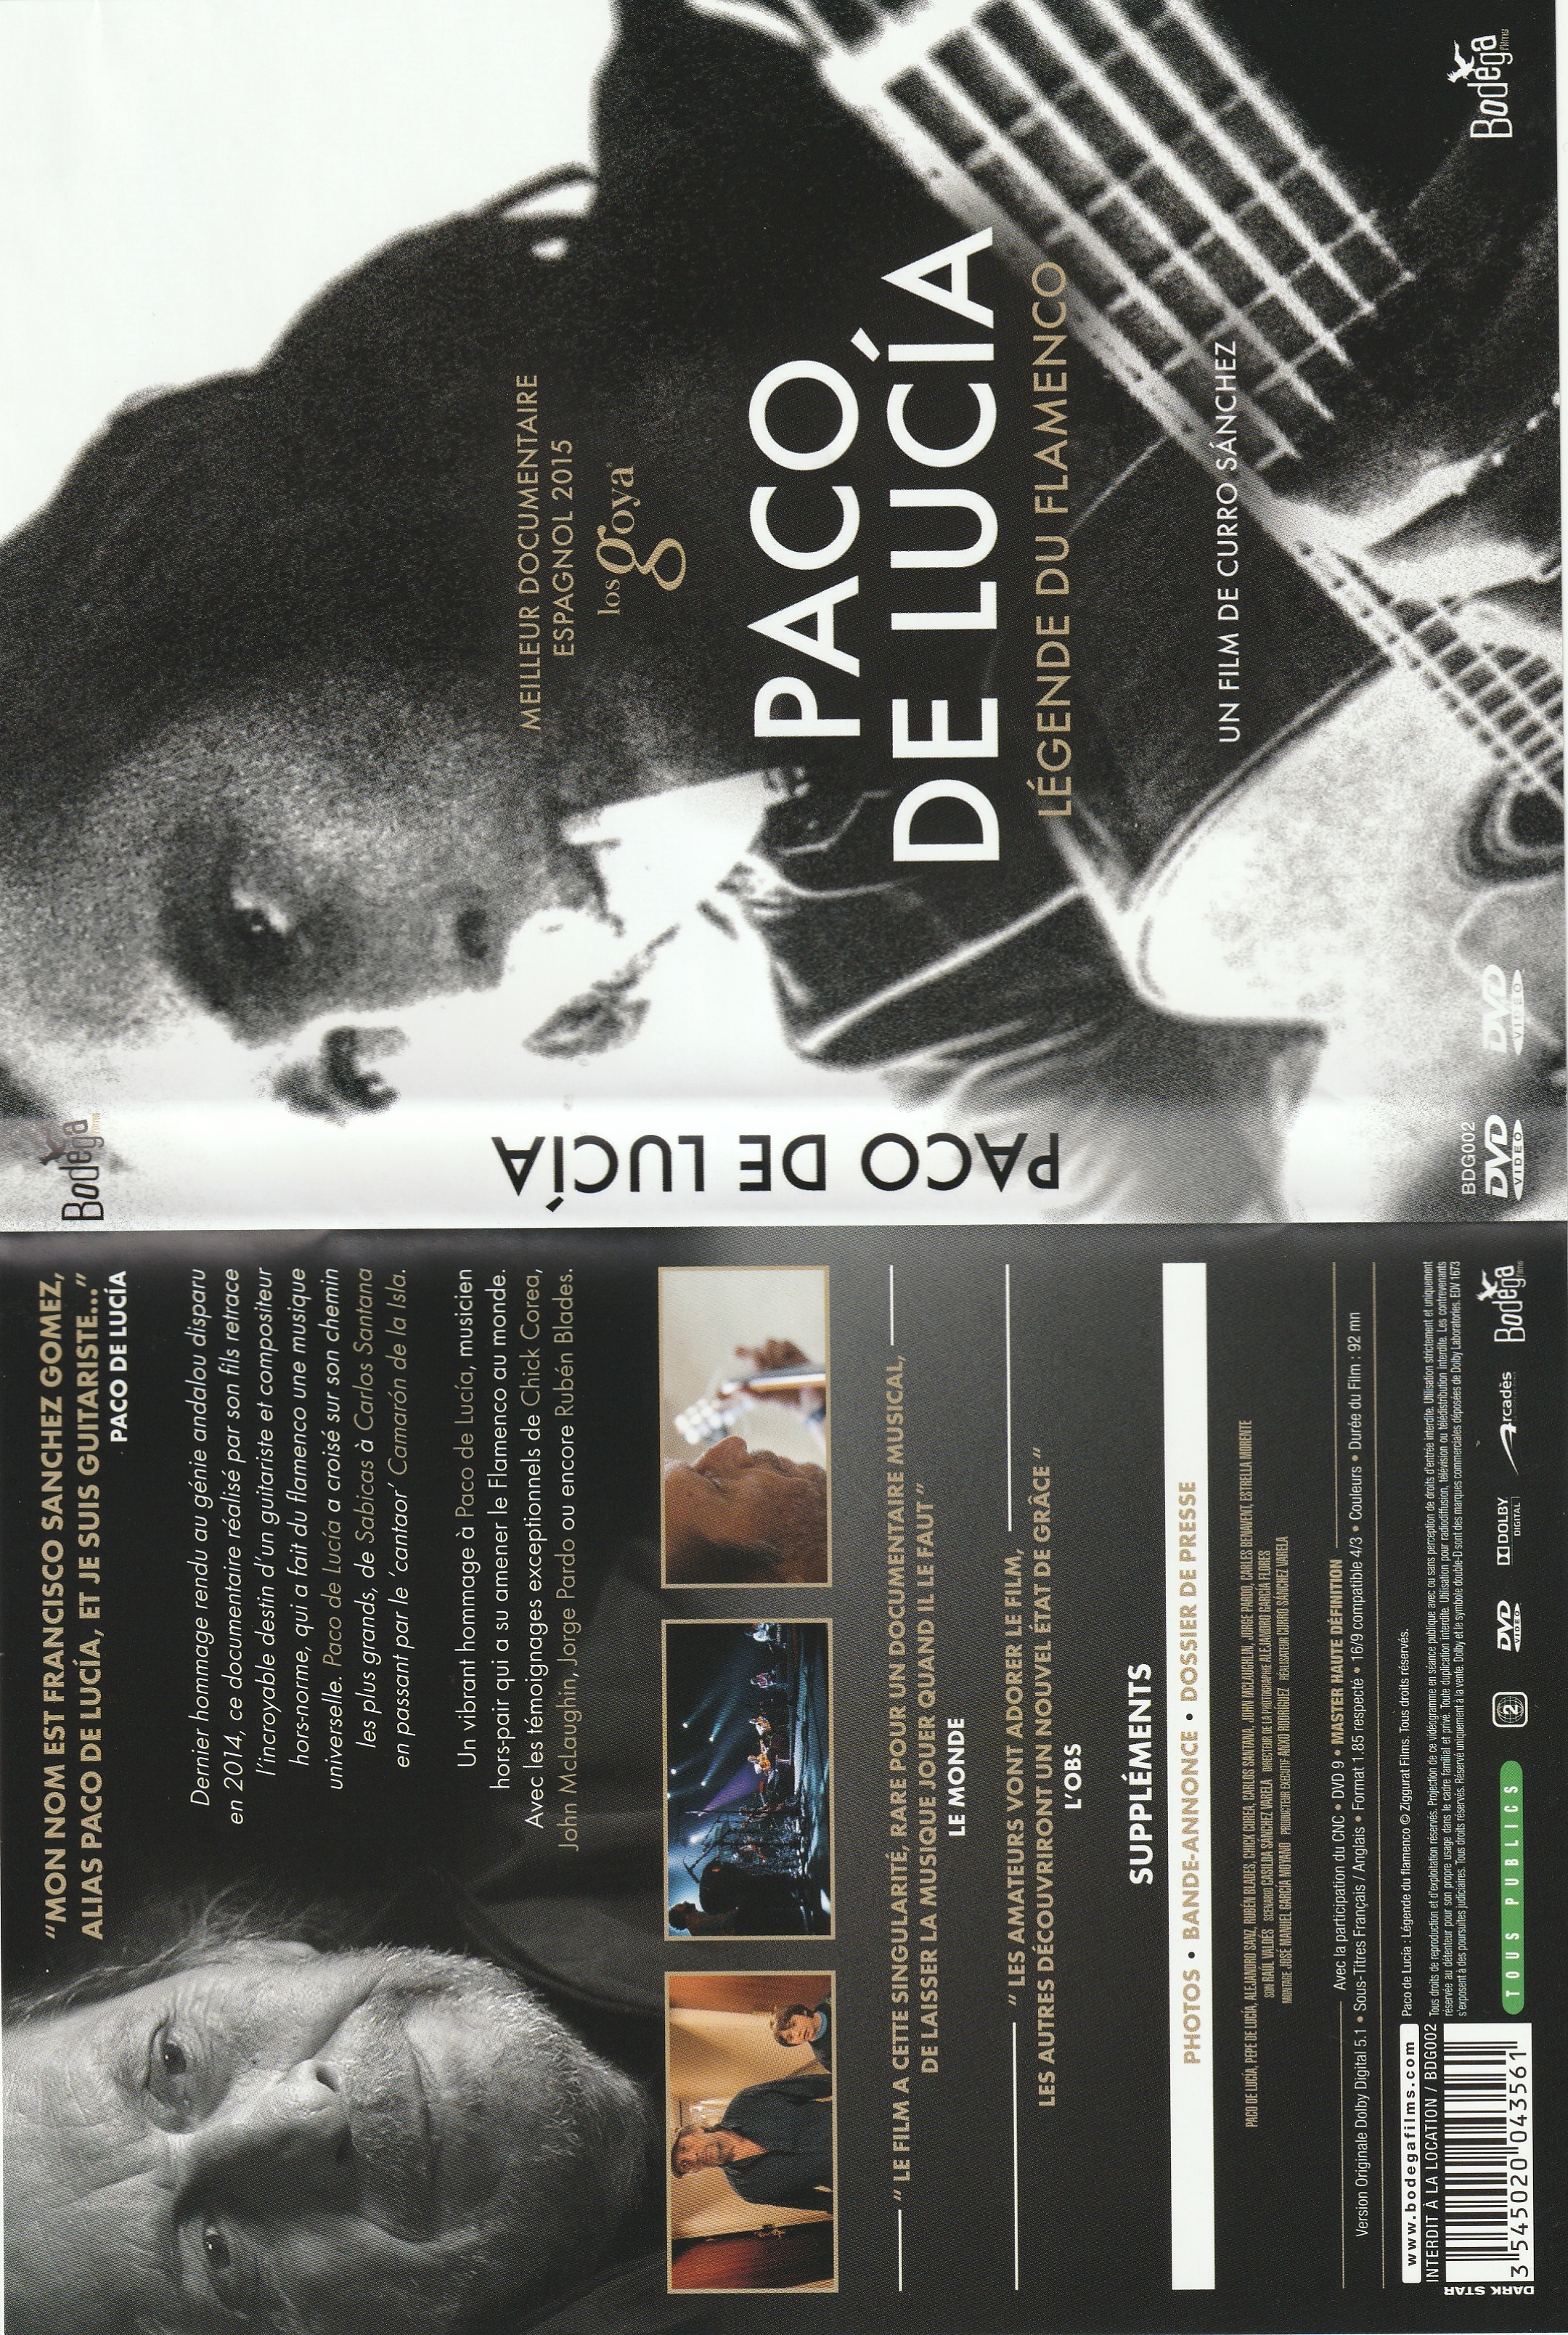 Jaquette DVD Paco de lucia